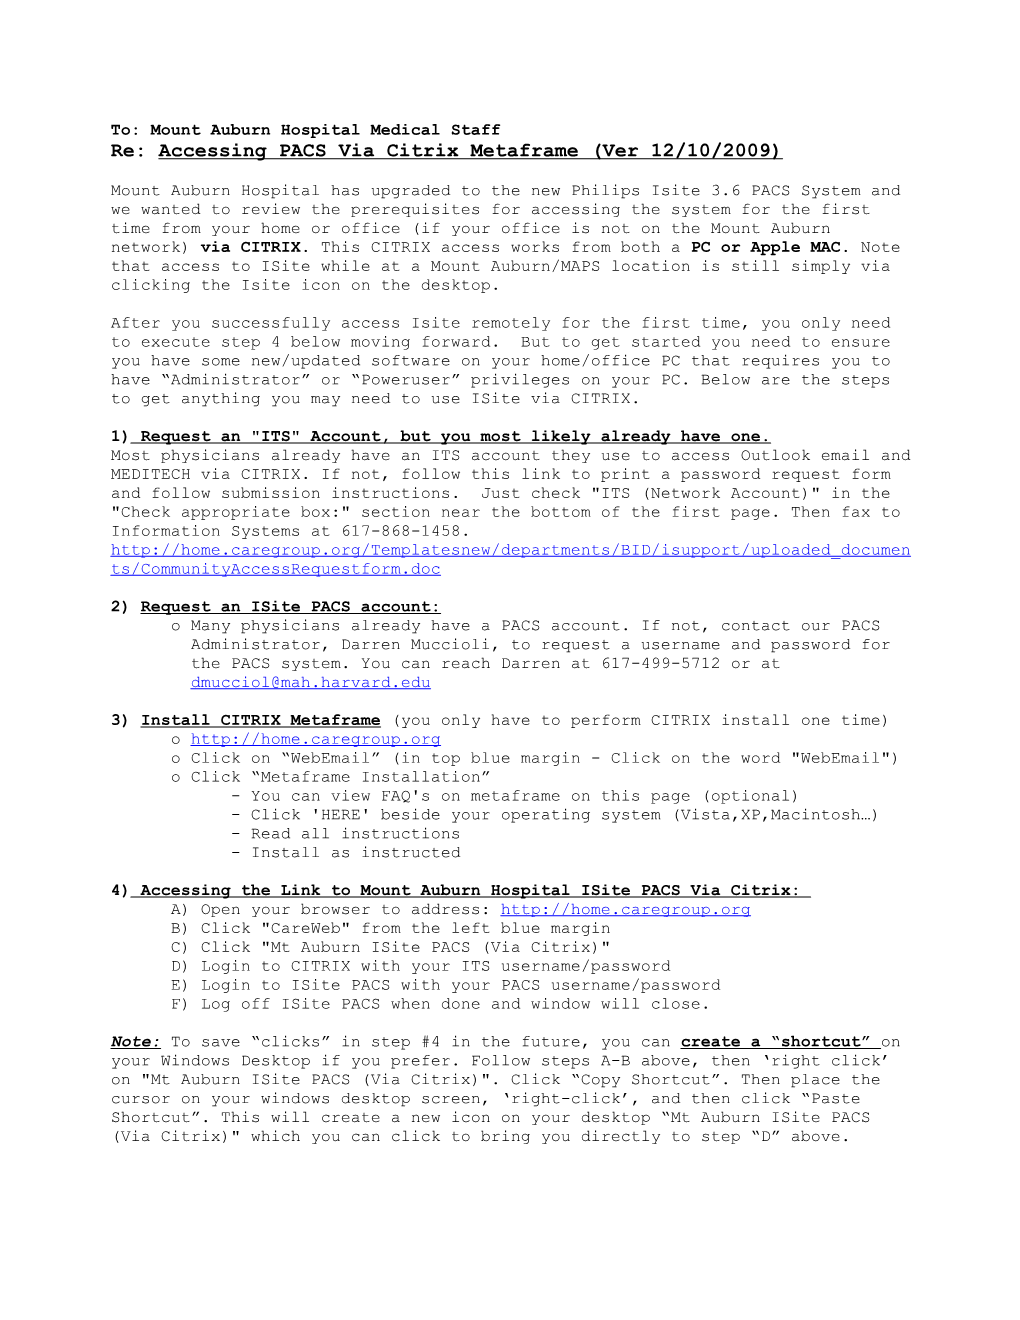 Re: Accessing PACS Via Citrix Metaframe (Ver 12/10/2009)